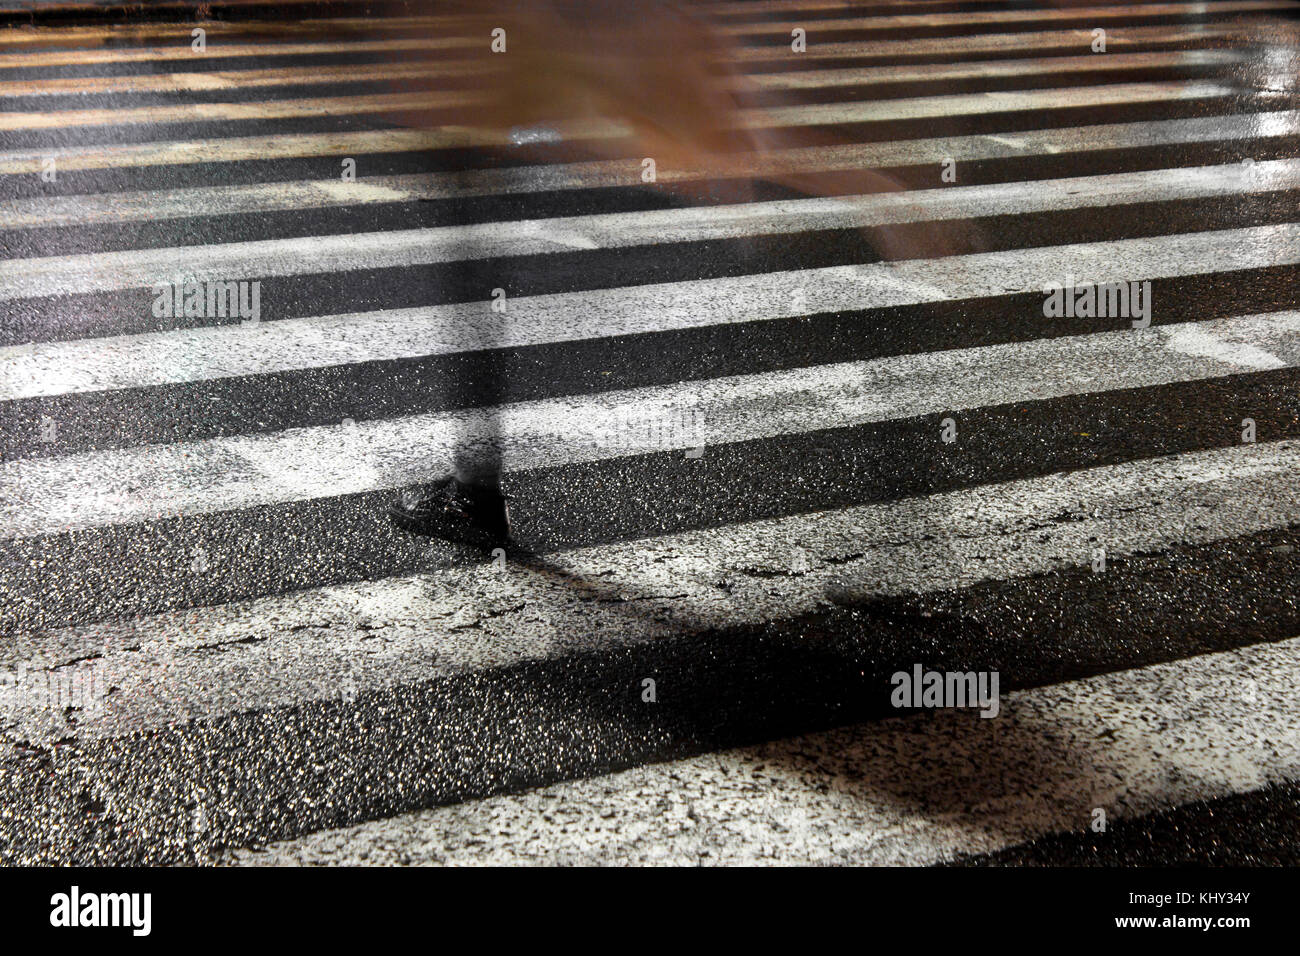 Rue ville pluvieuse réflexions : une jeune femme fragile de disparaître en traversant la rue humide dans la nuit étincelante Banque D'Images